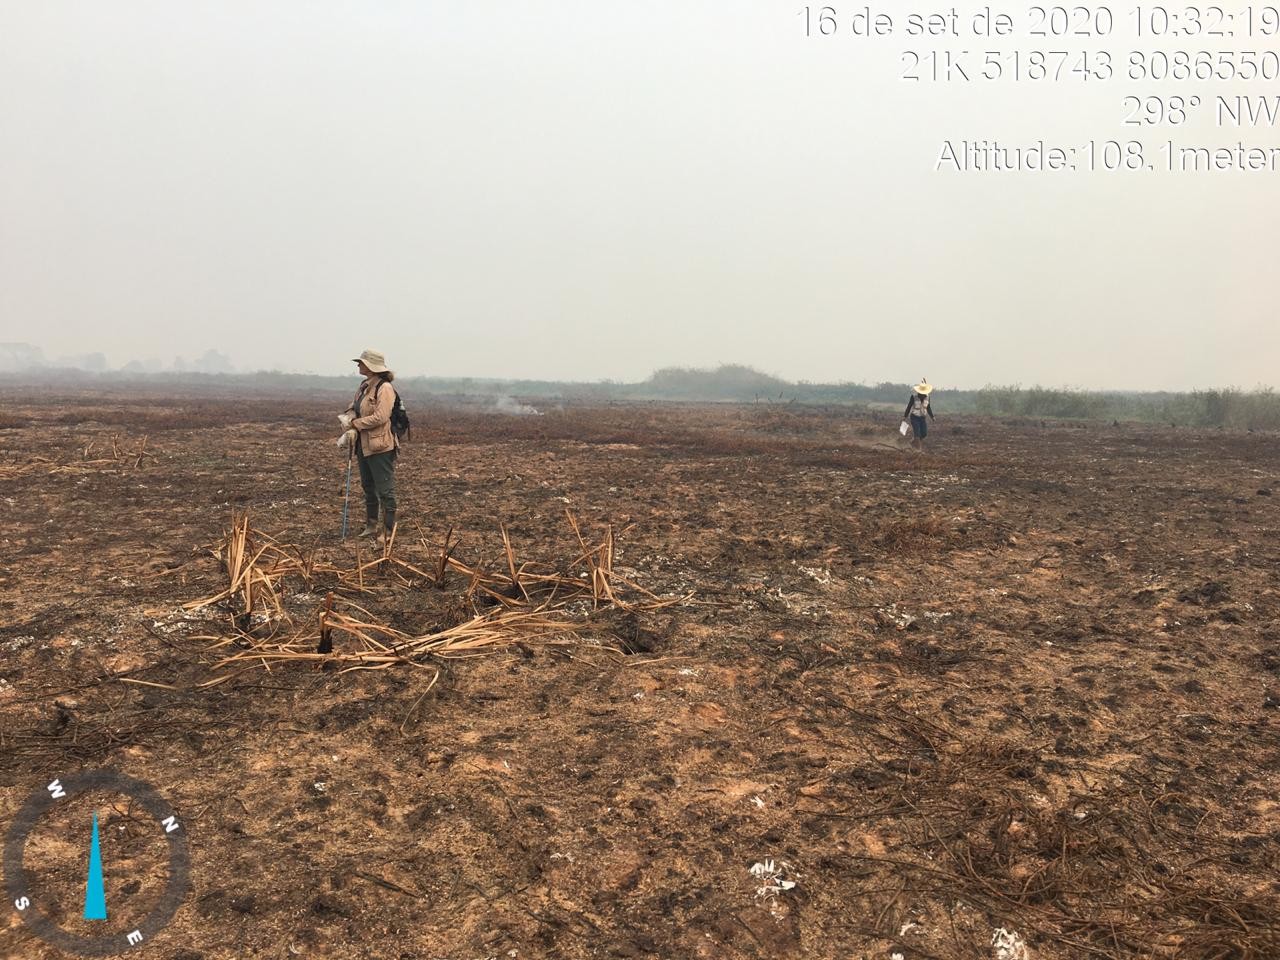 Pantanal deve levar pelo menos 5 anos sem queimadas para recuperar ecossistema, diz pesquisador thumbnail